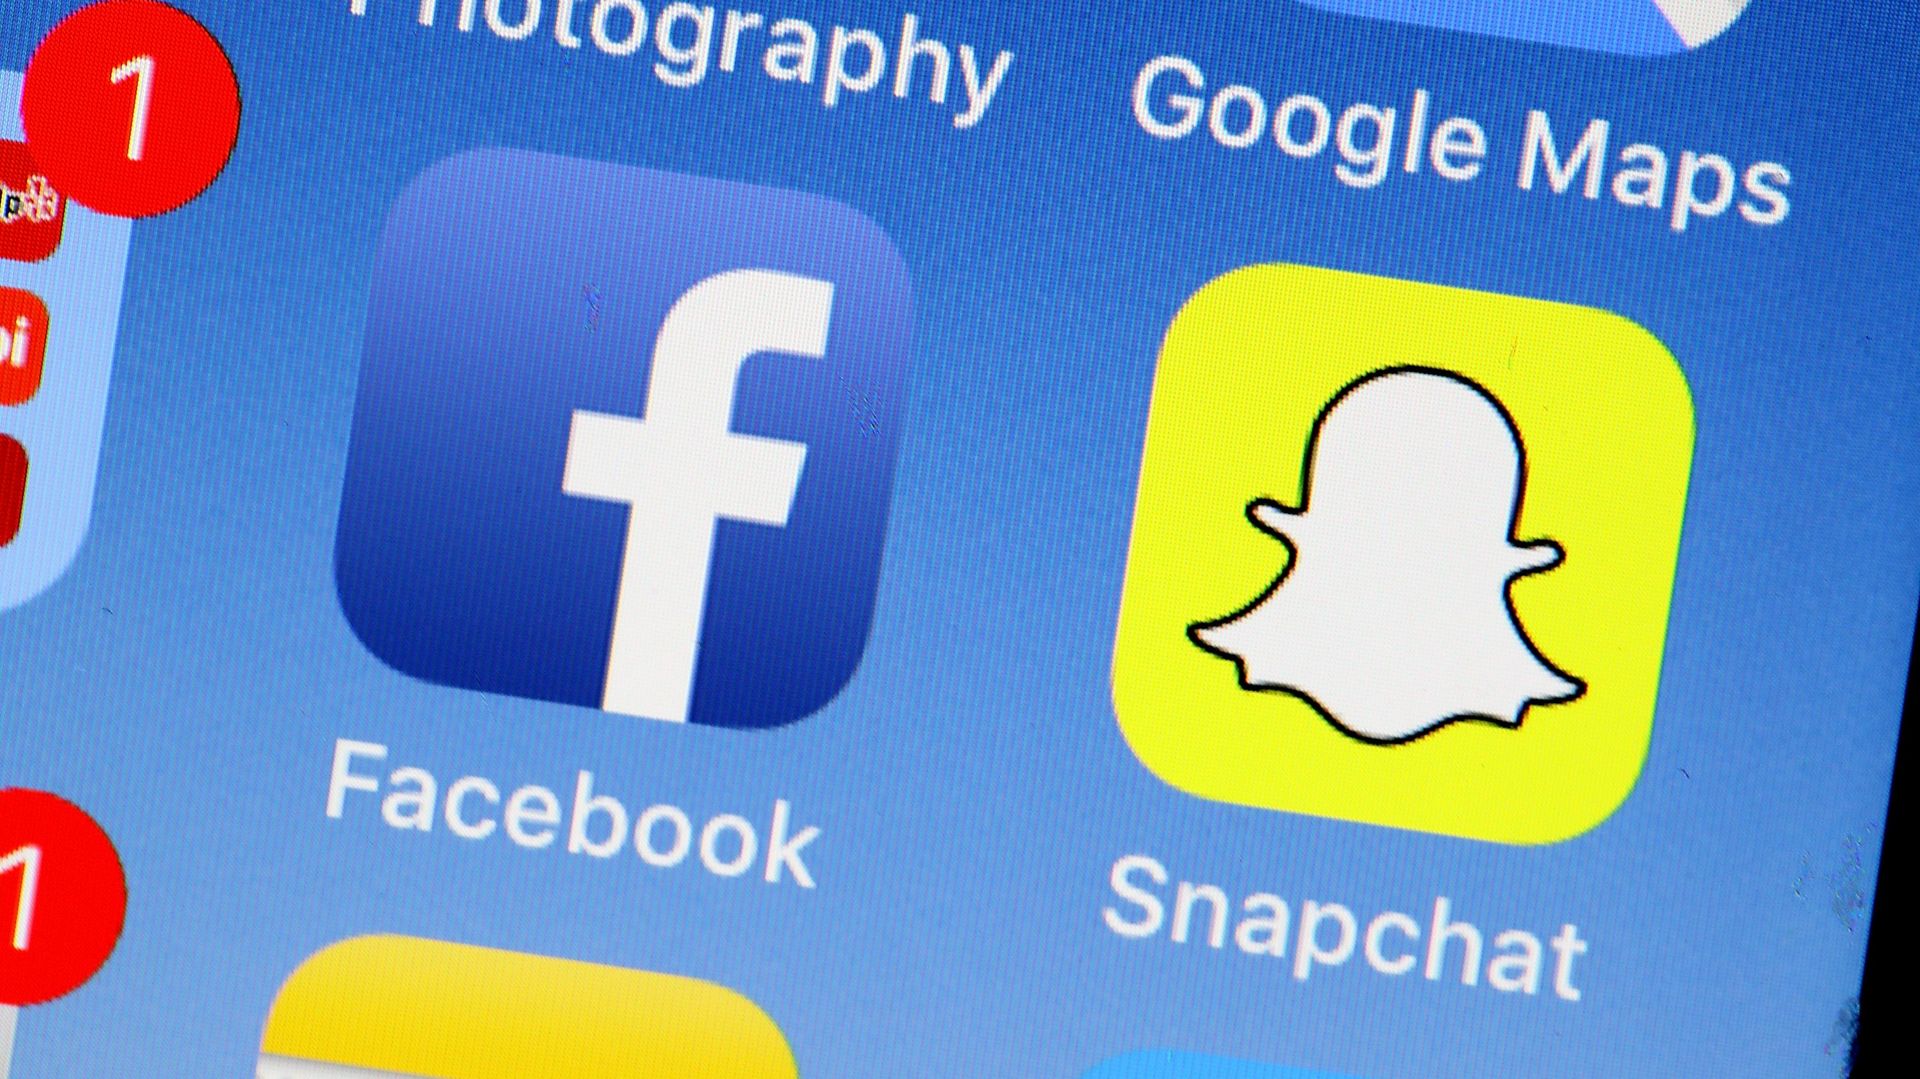 Pour le patron de Snapchat, les règles européennes profitent à Google et Facebook